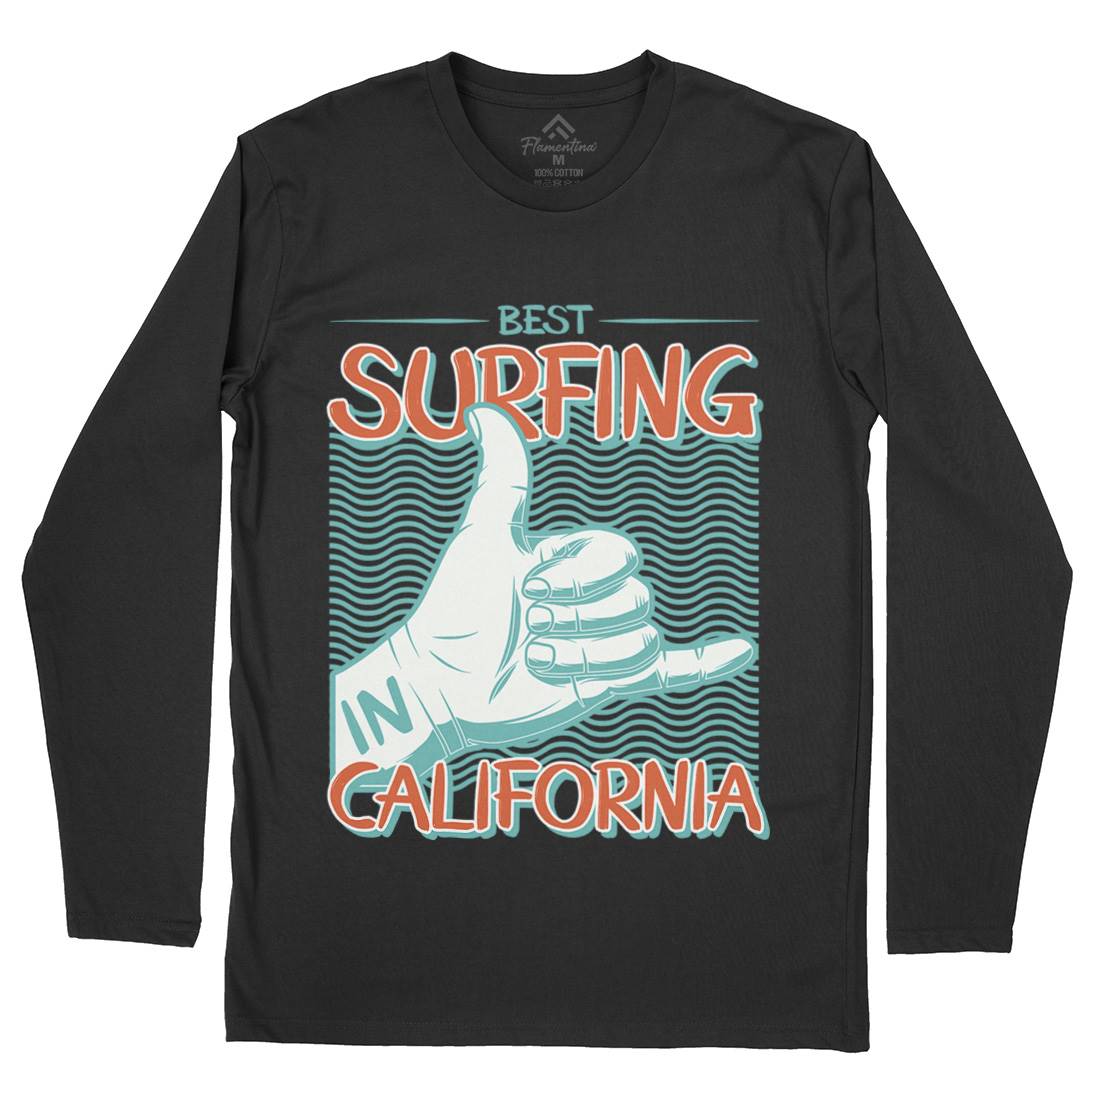 Best Surfing Mens Long Sleeve T-Shirt Surf D908